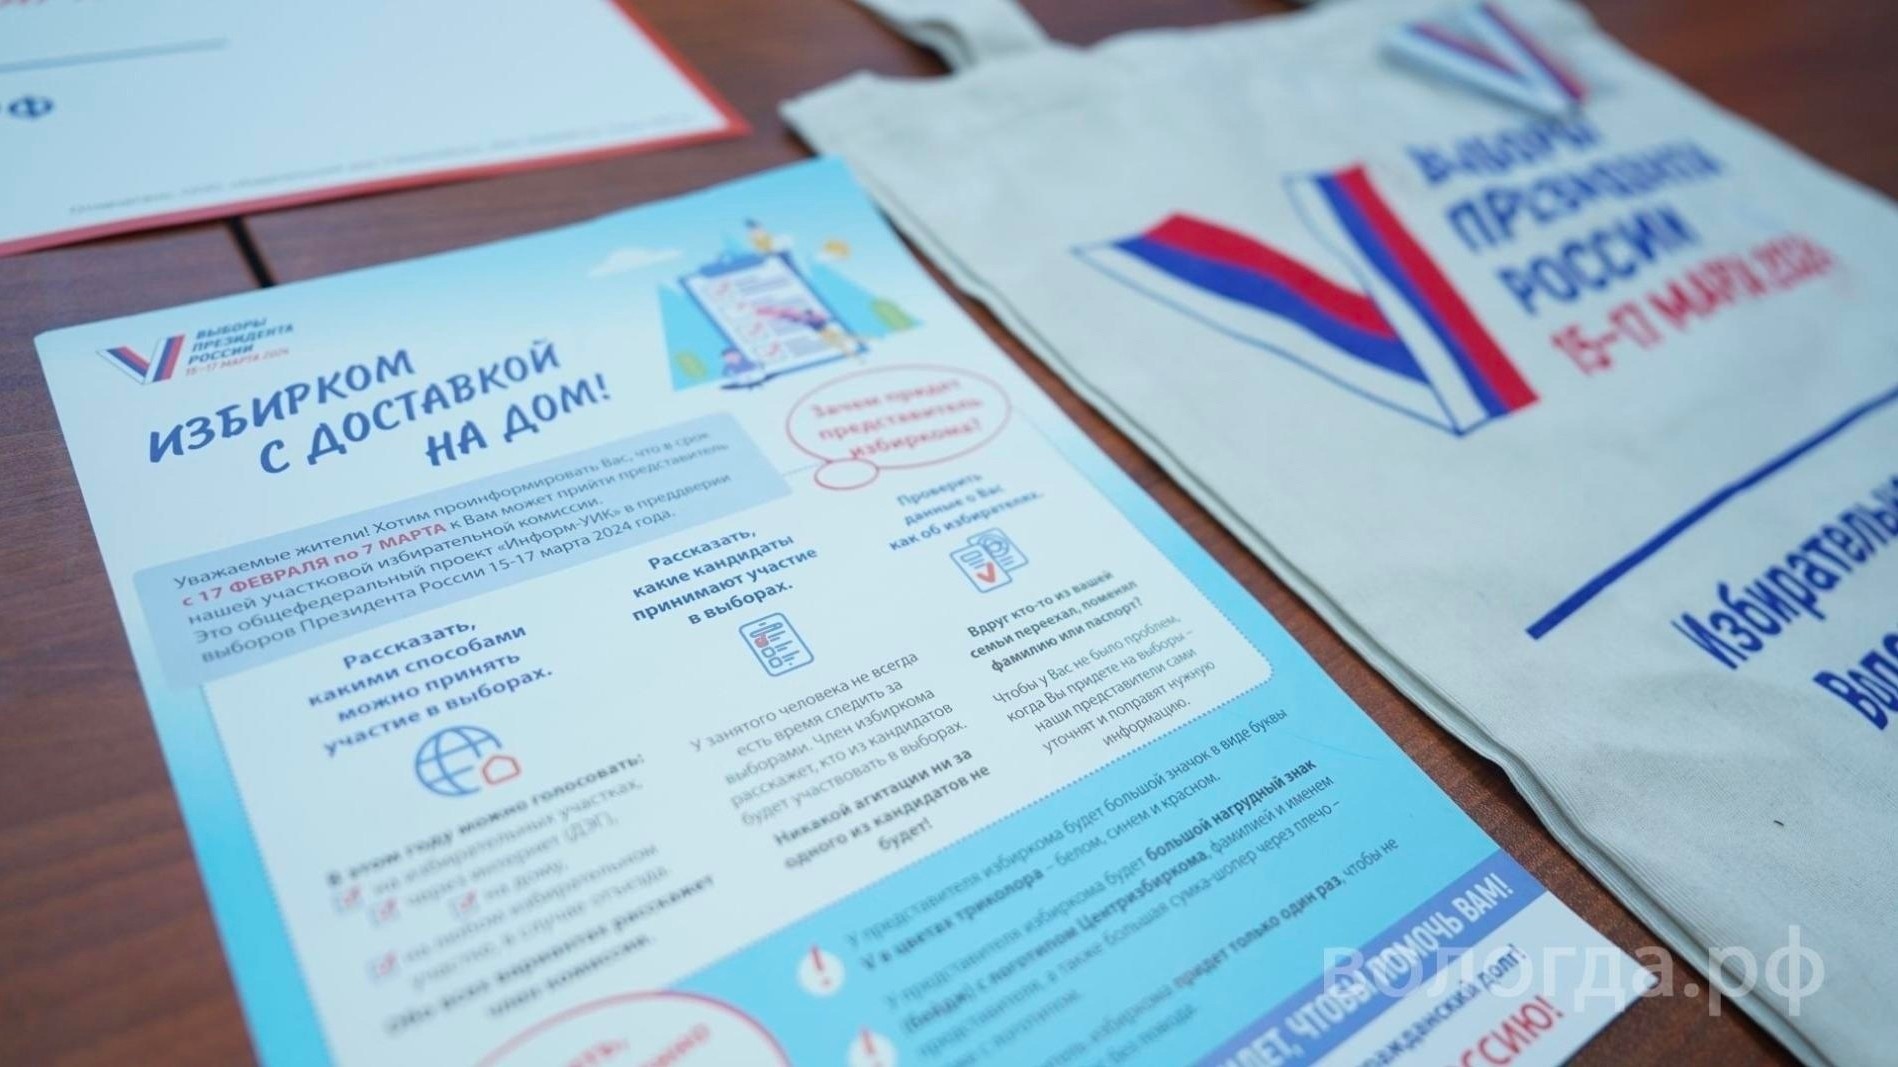 24 тысячи жителей Вологды зарегистрировались на дистанционное электронное голосование